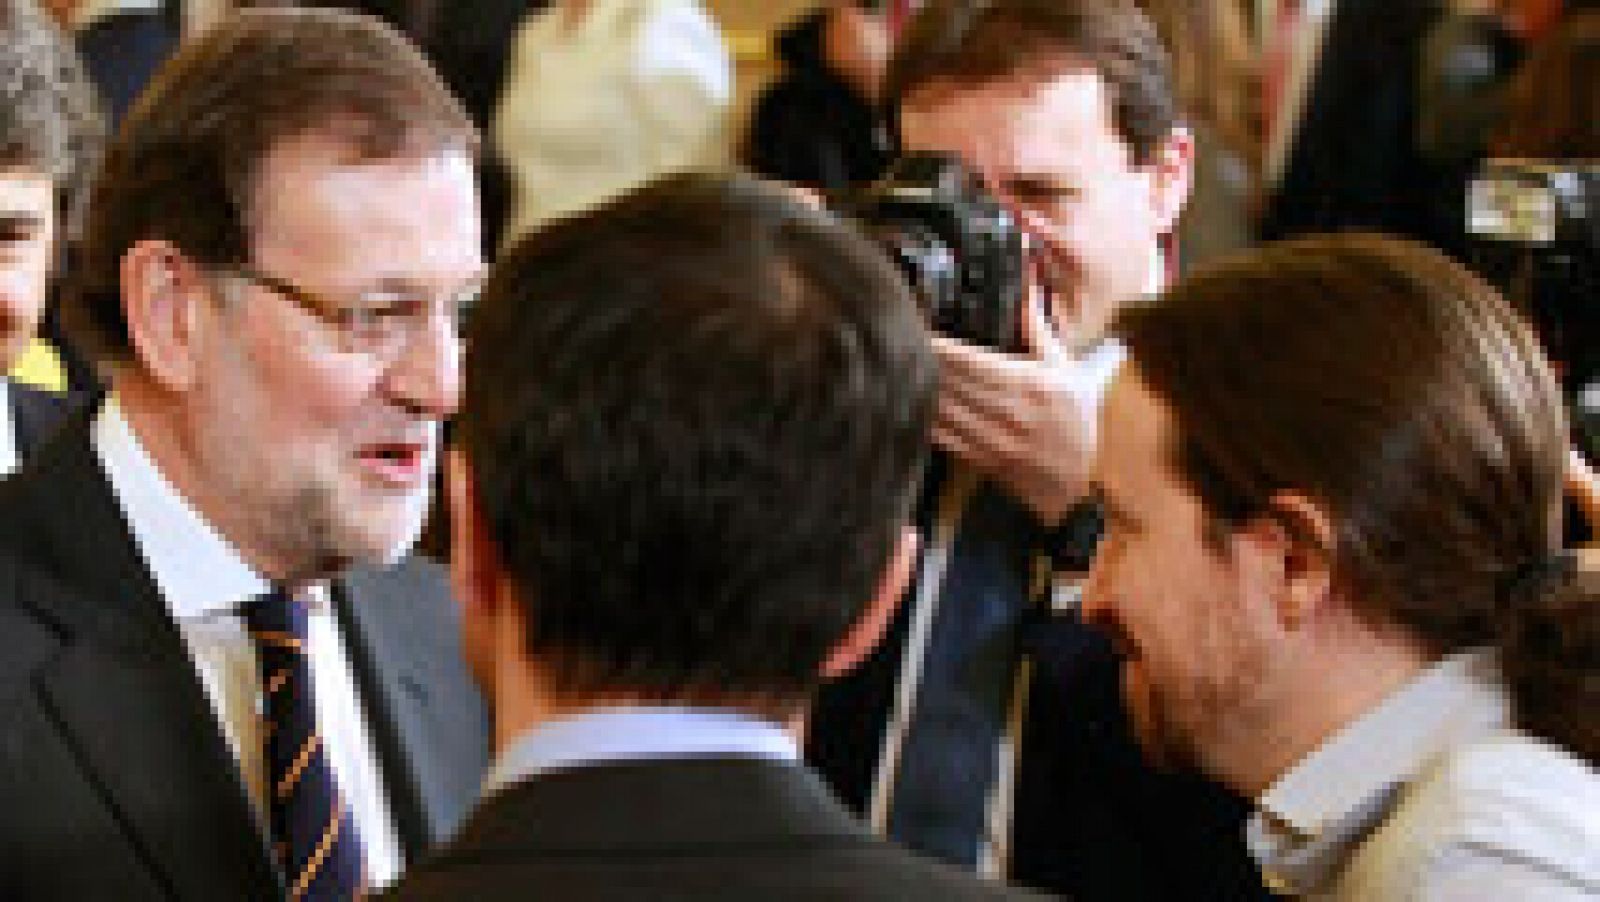 Los candidatos celebran una Constitución que piden "reformar", menos Rajoy, que no lo ve una "prioridad"